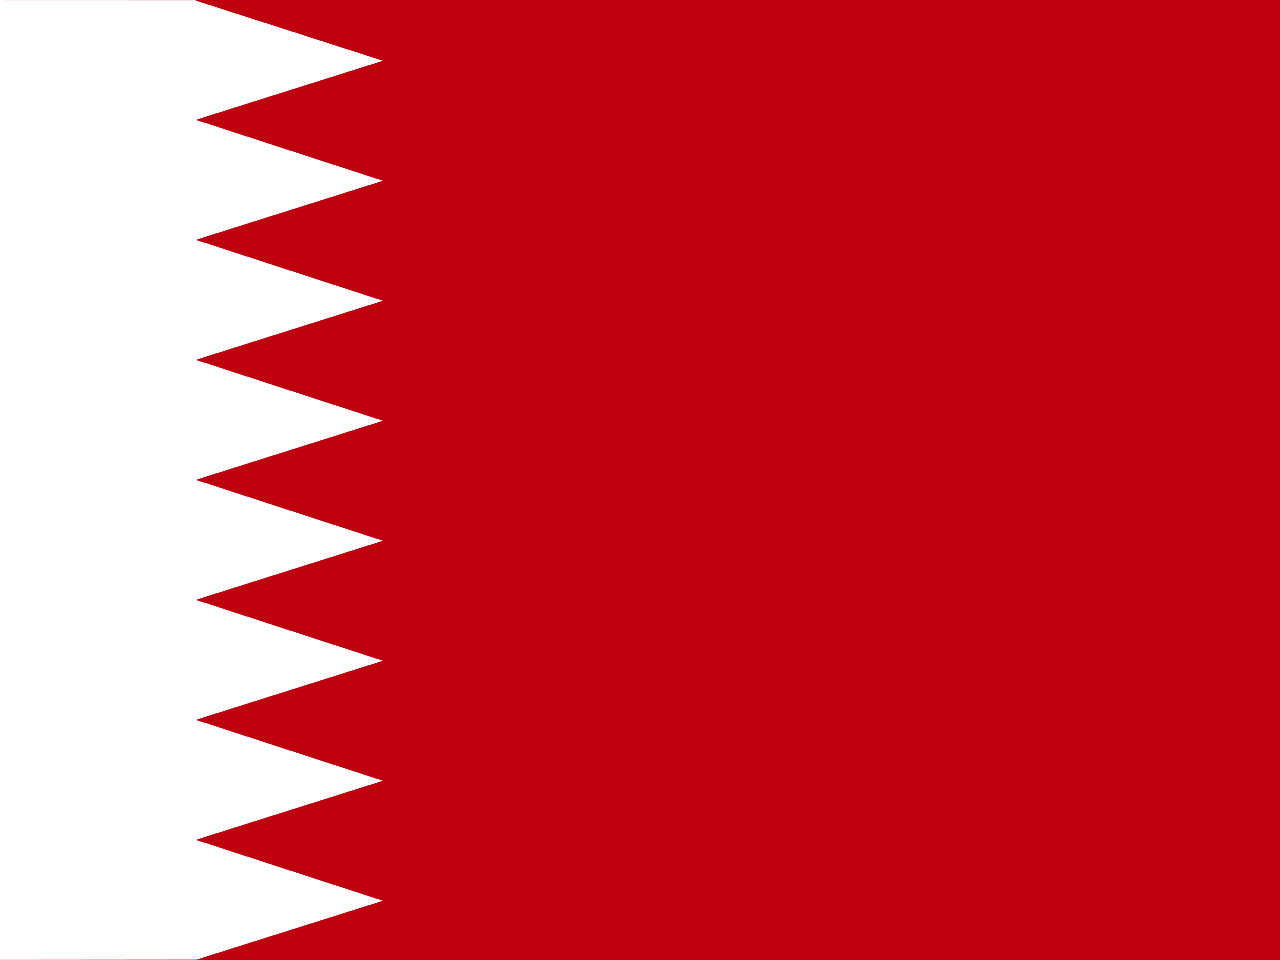 GP Bahrain 2024